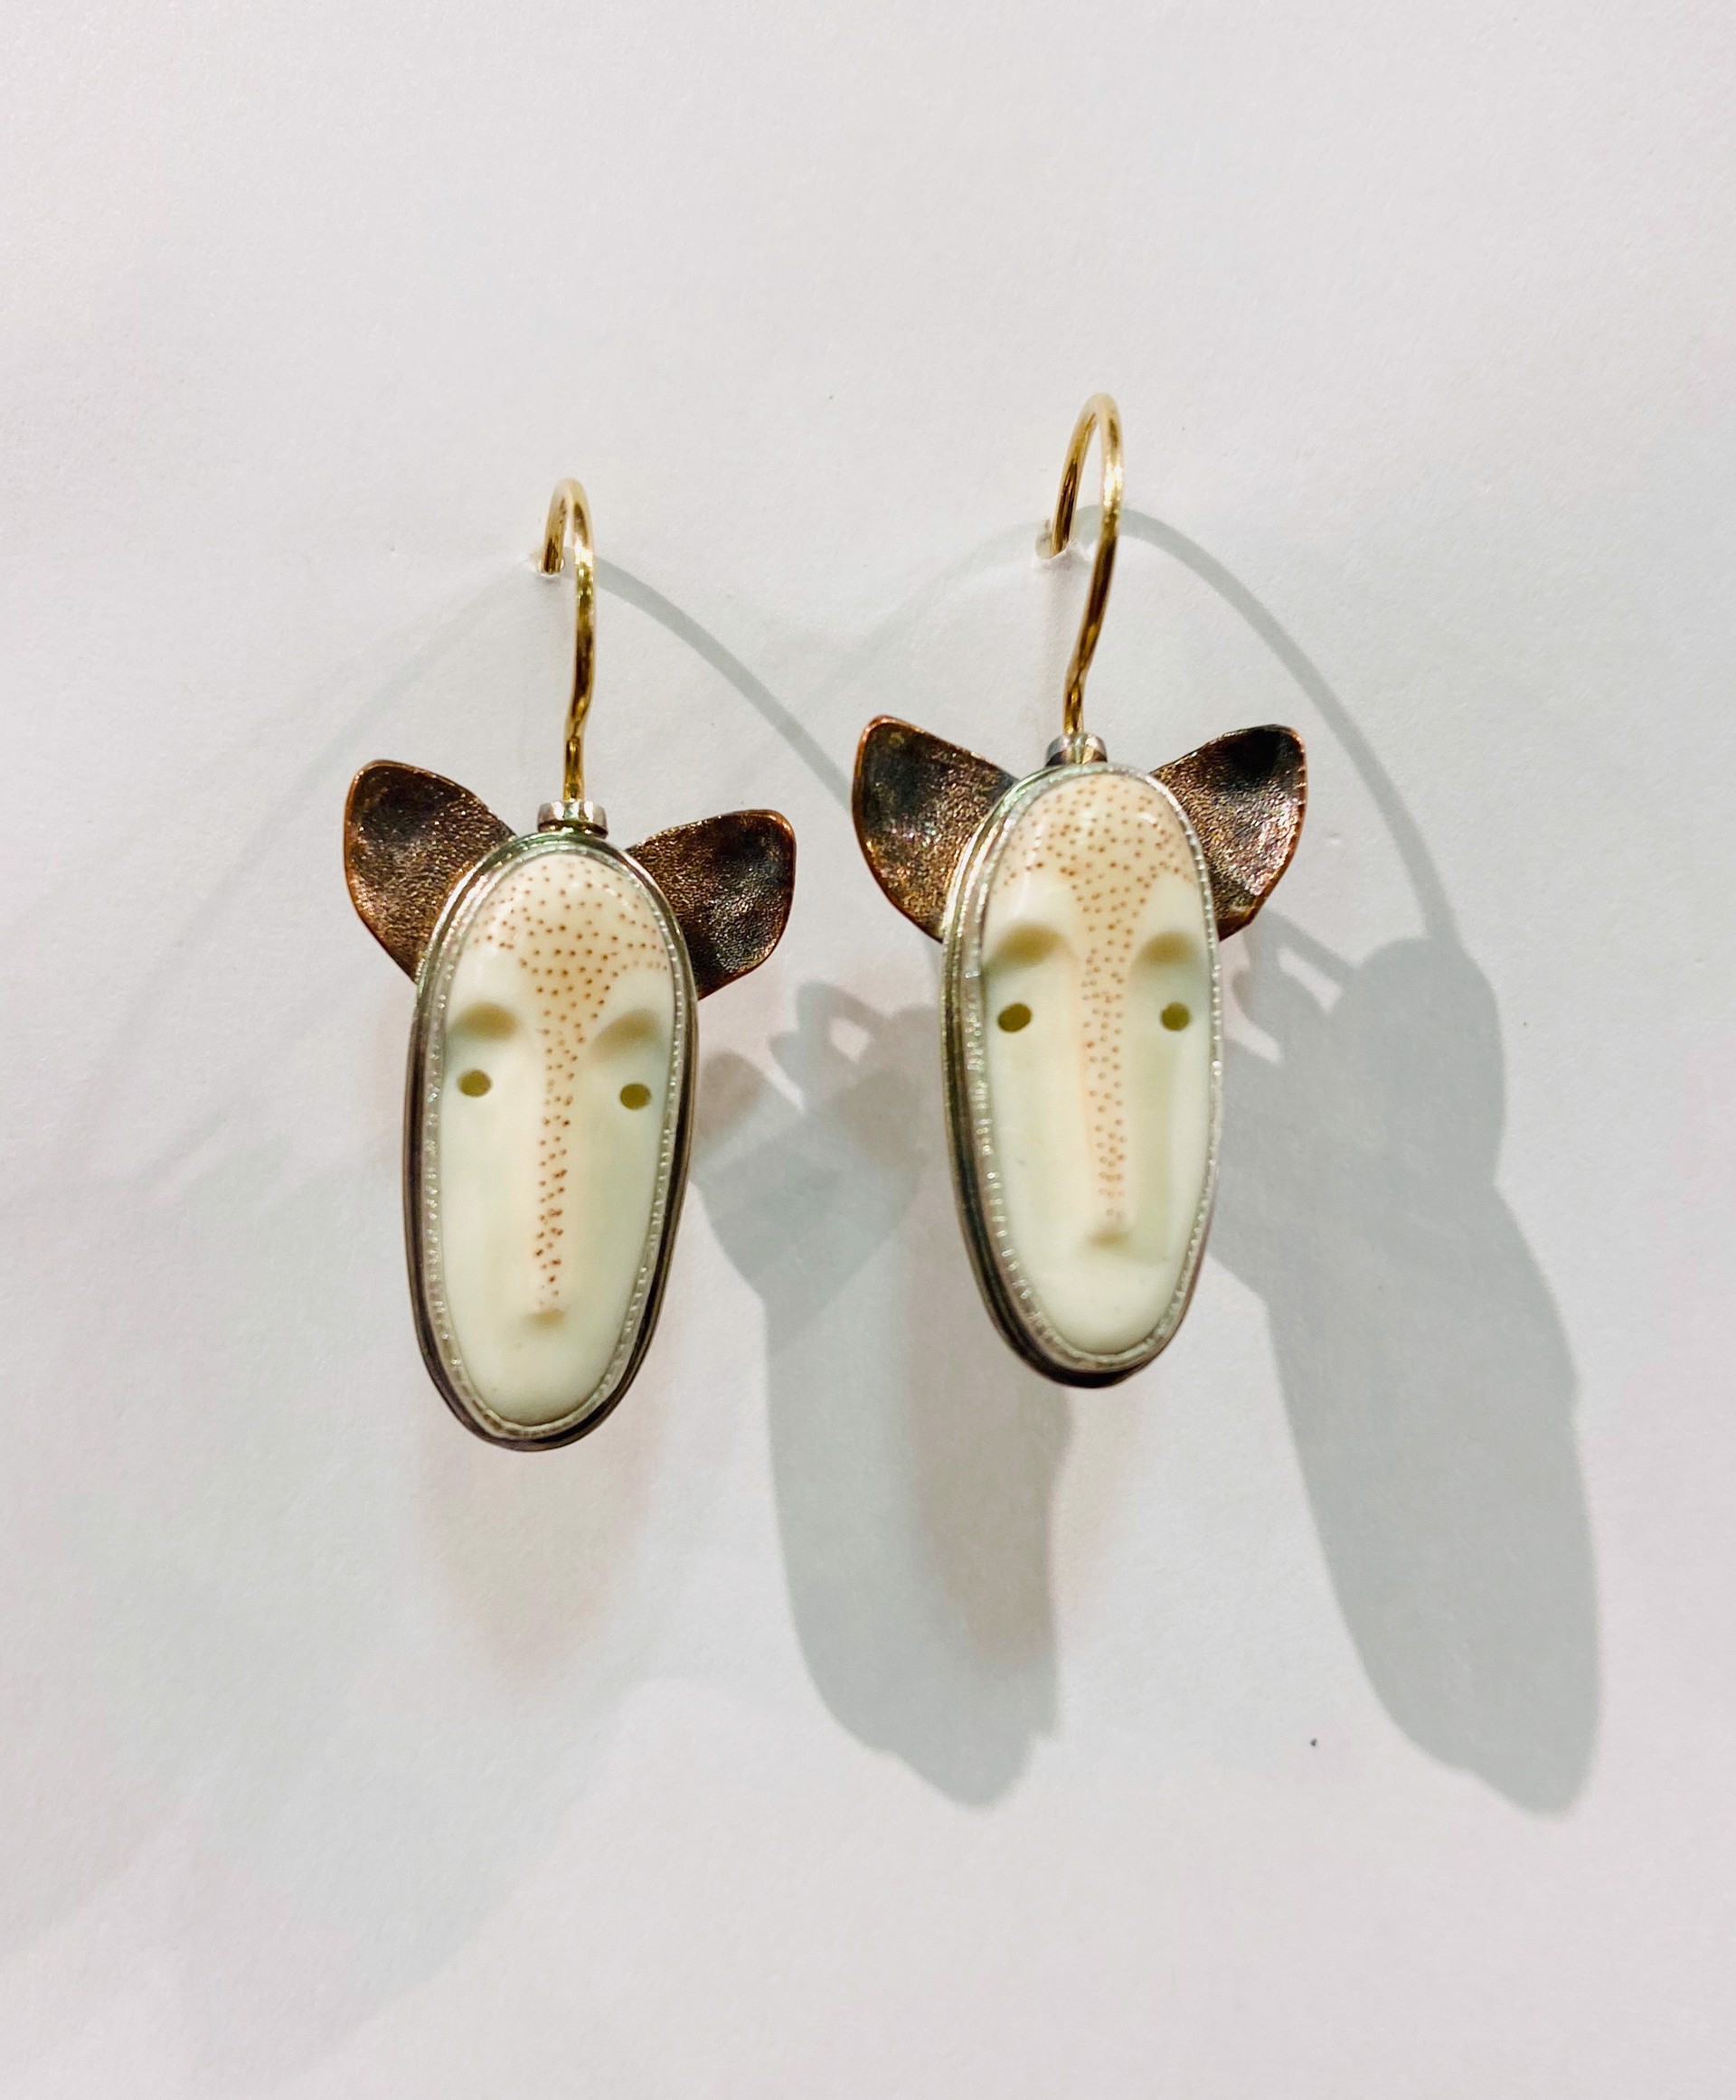 Face Earrings (Hooks) by CAROLYN MORRIS BACH